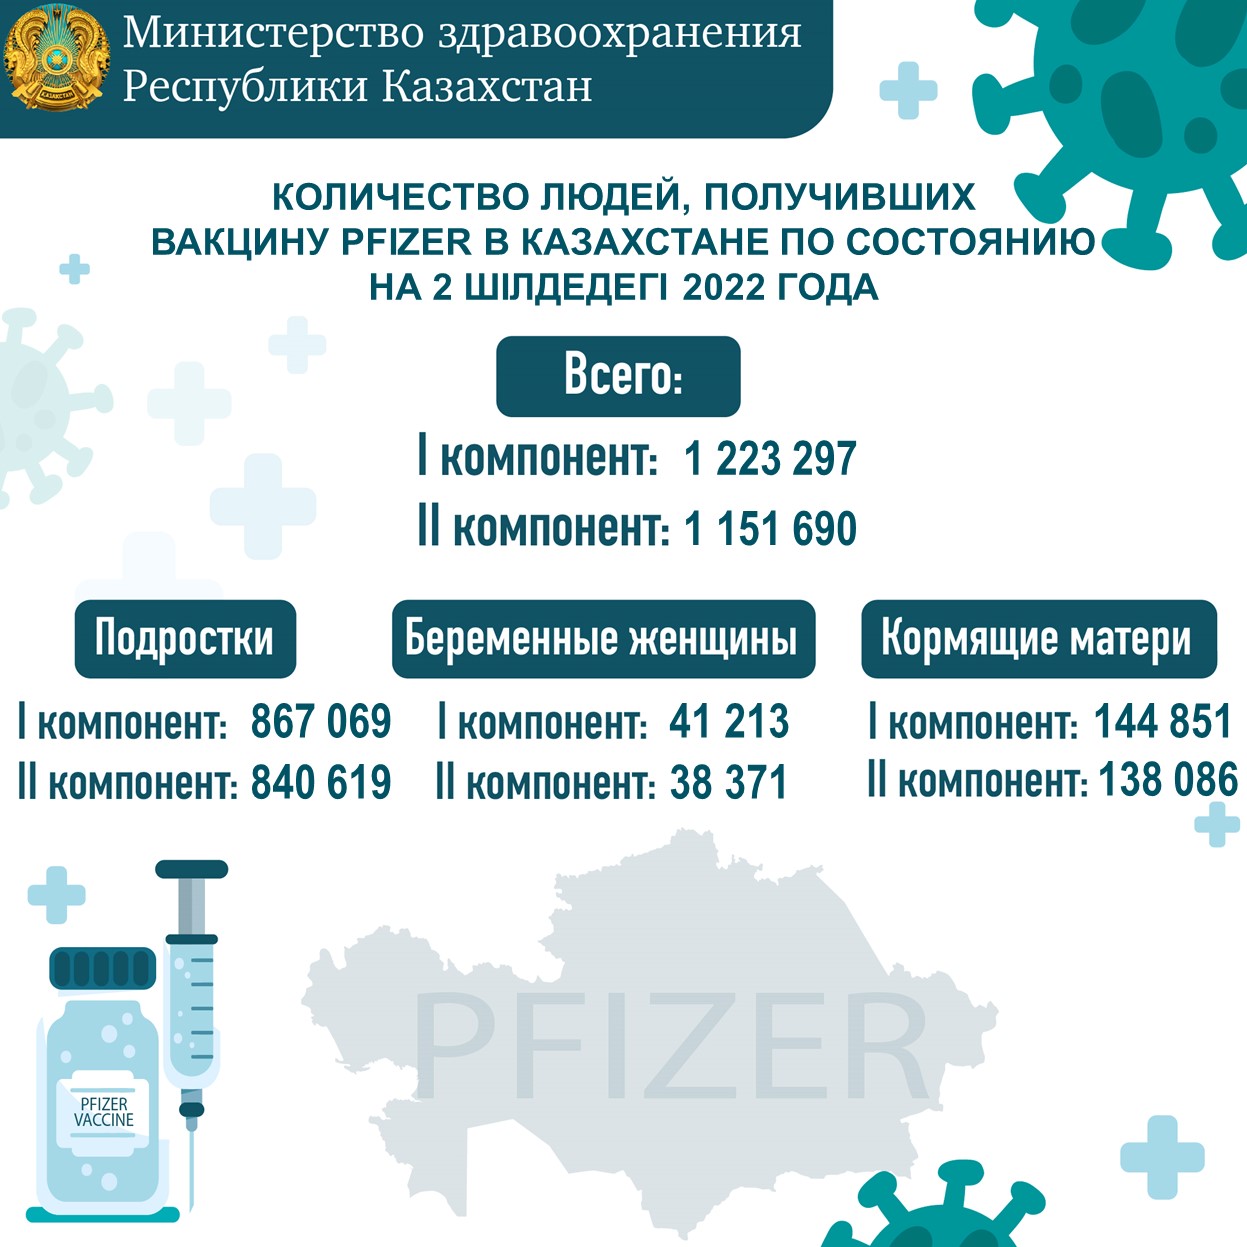 Количество людей, получивших вакцину Рfizer в Казахстане по состоянию на 2.07.2022 года